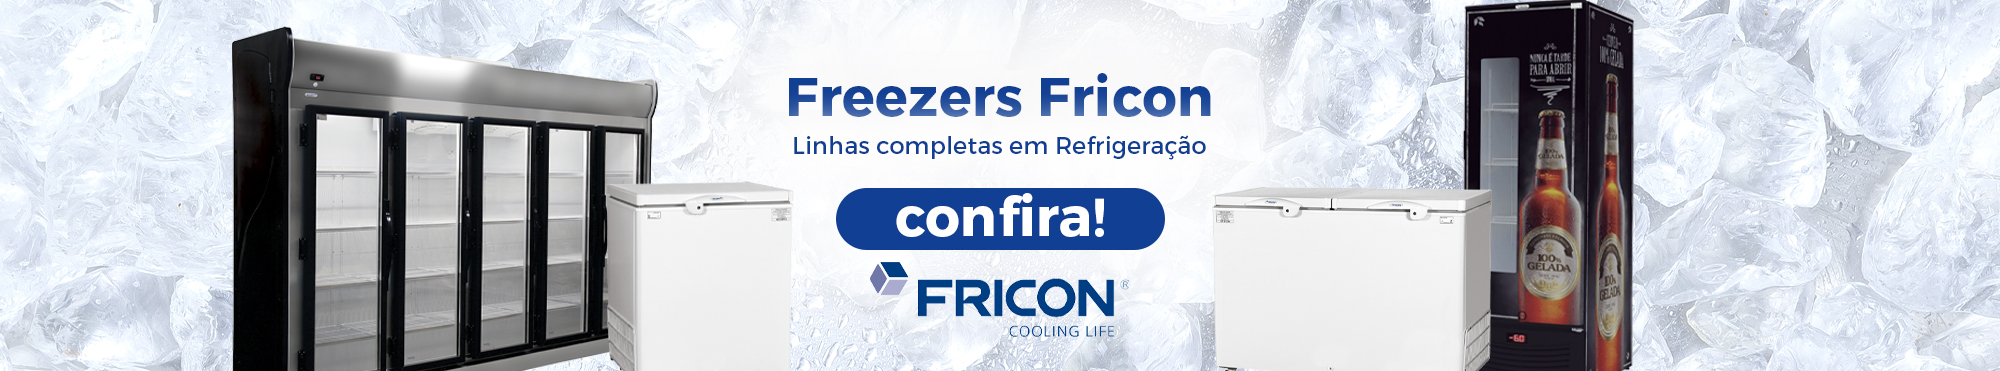 Freezers Fricon - Linhas completas em refrigeração